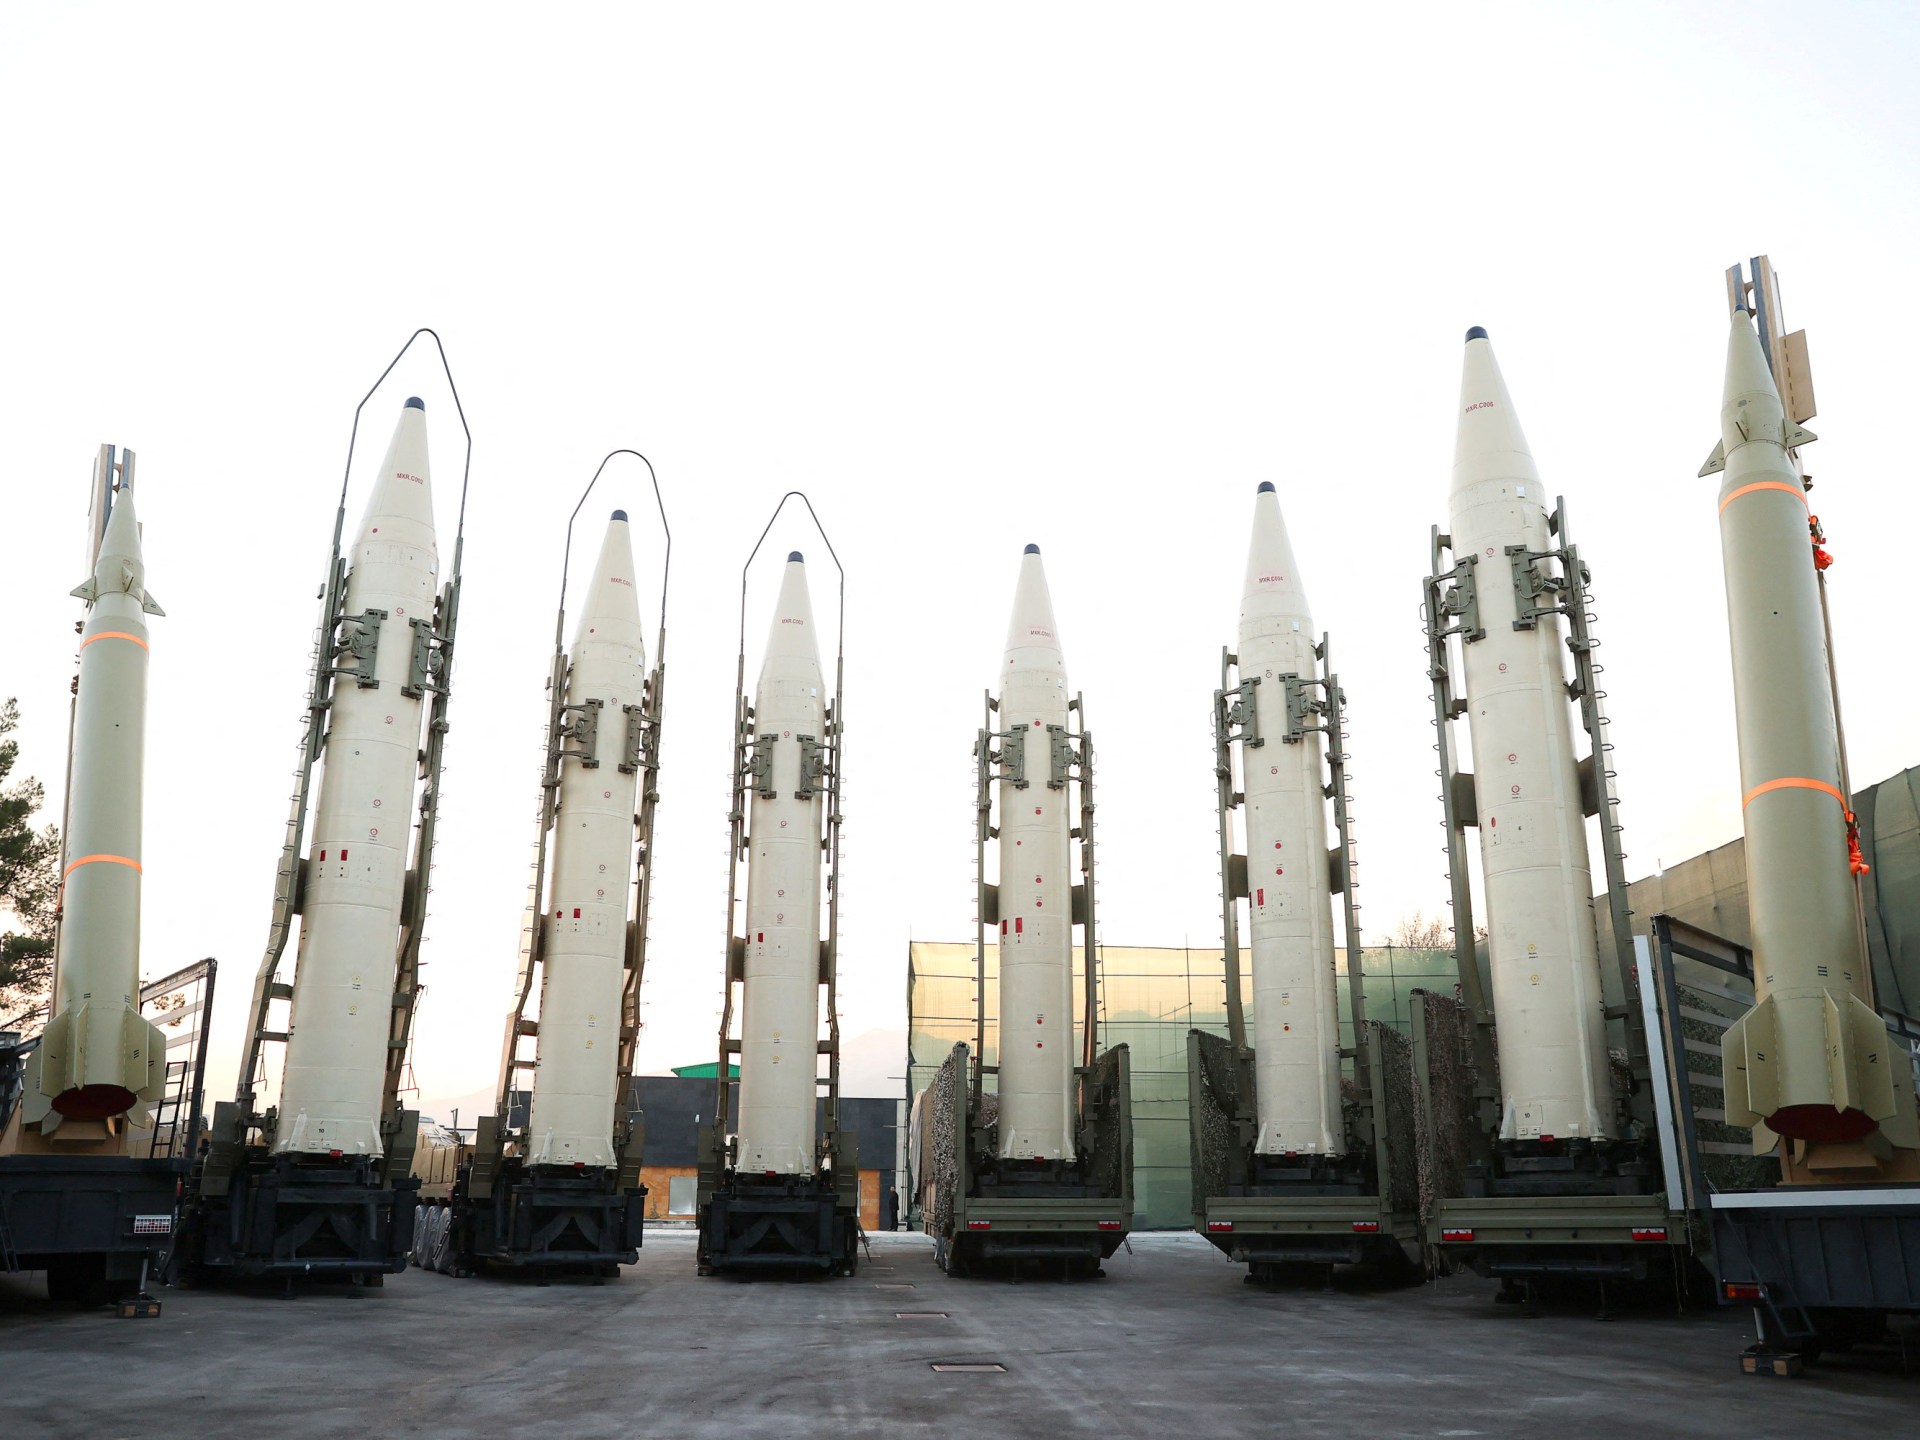 تحذير أميركي لإيران من تزويد روسيا بصواريخ باليستية | أخبار – البوكس نيوز